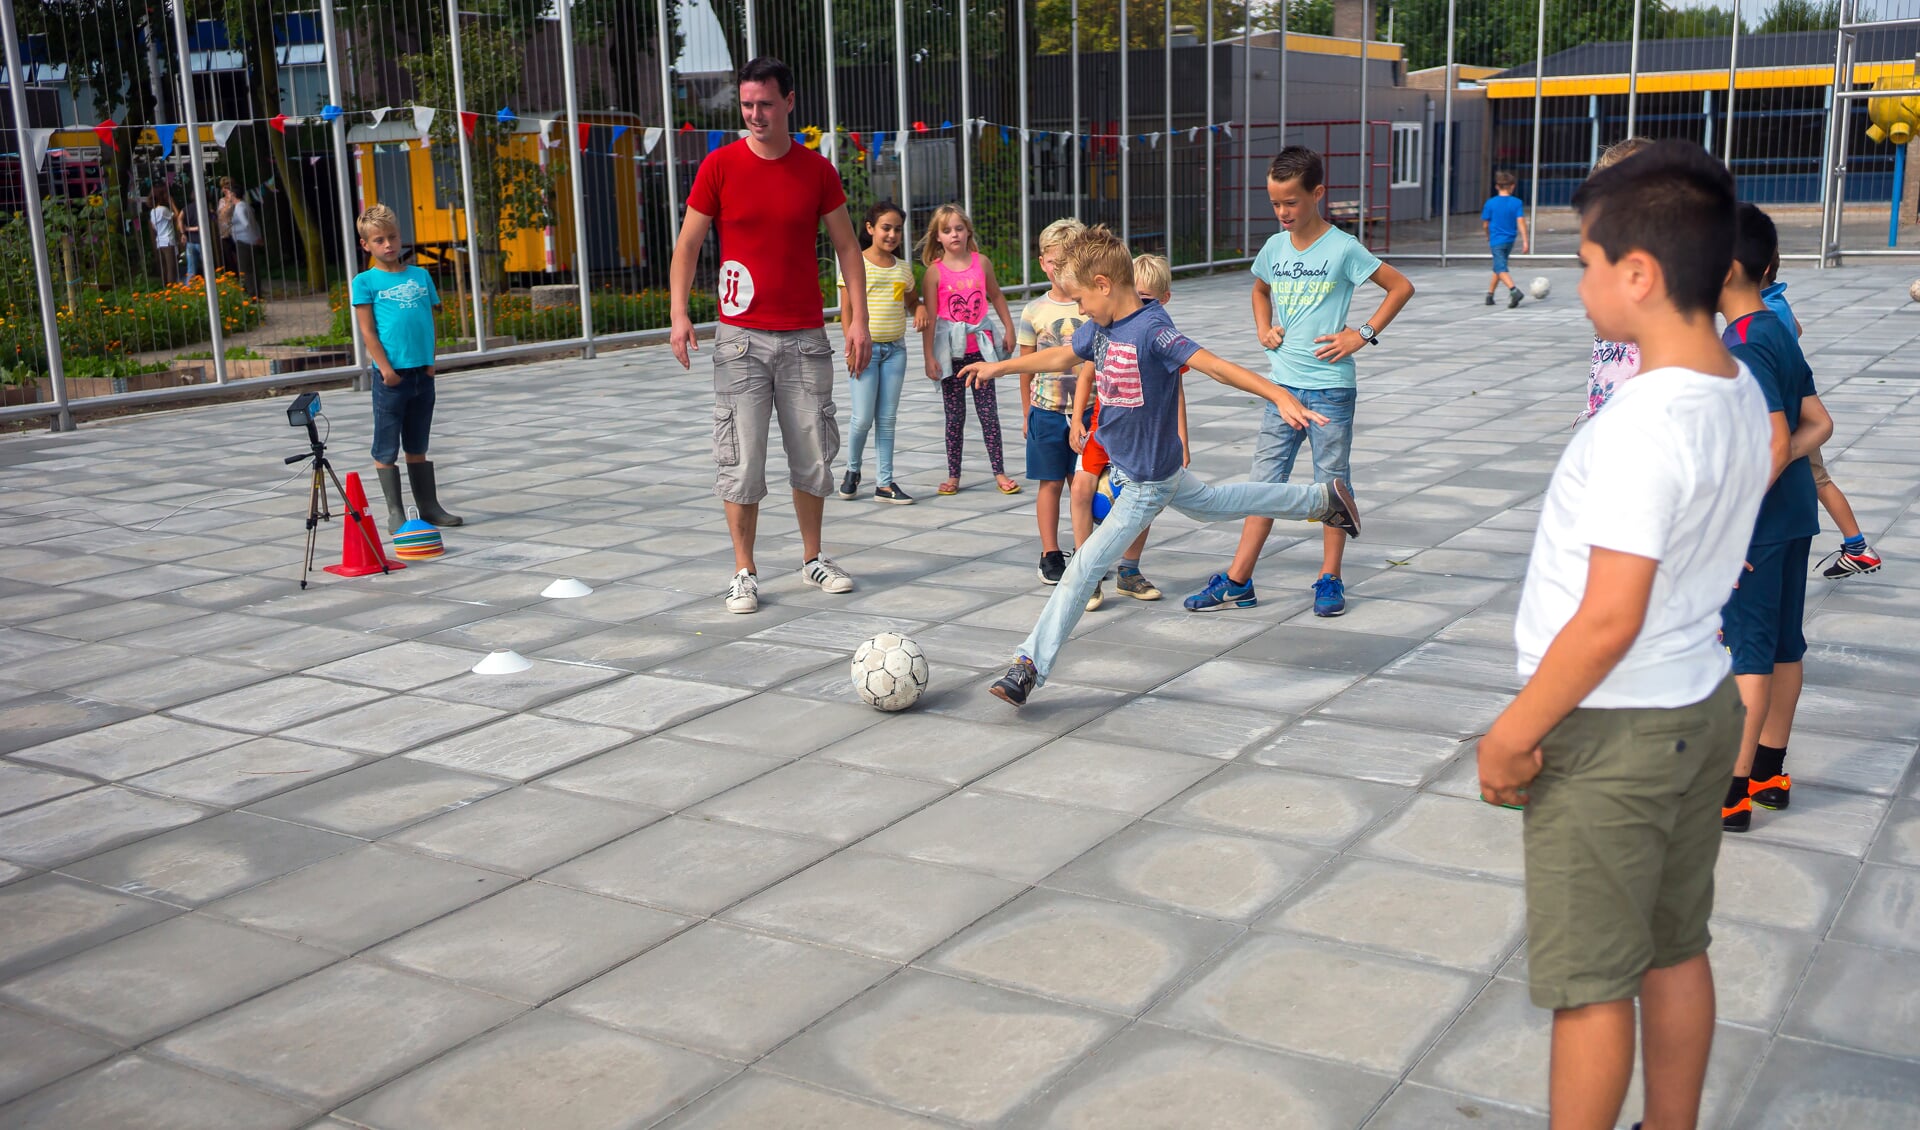 • De voetbalkooi zorgt voor veel speelplezier, maar is ook een plek waar hangjeud samenkomt. 